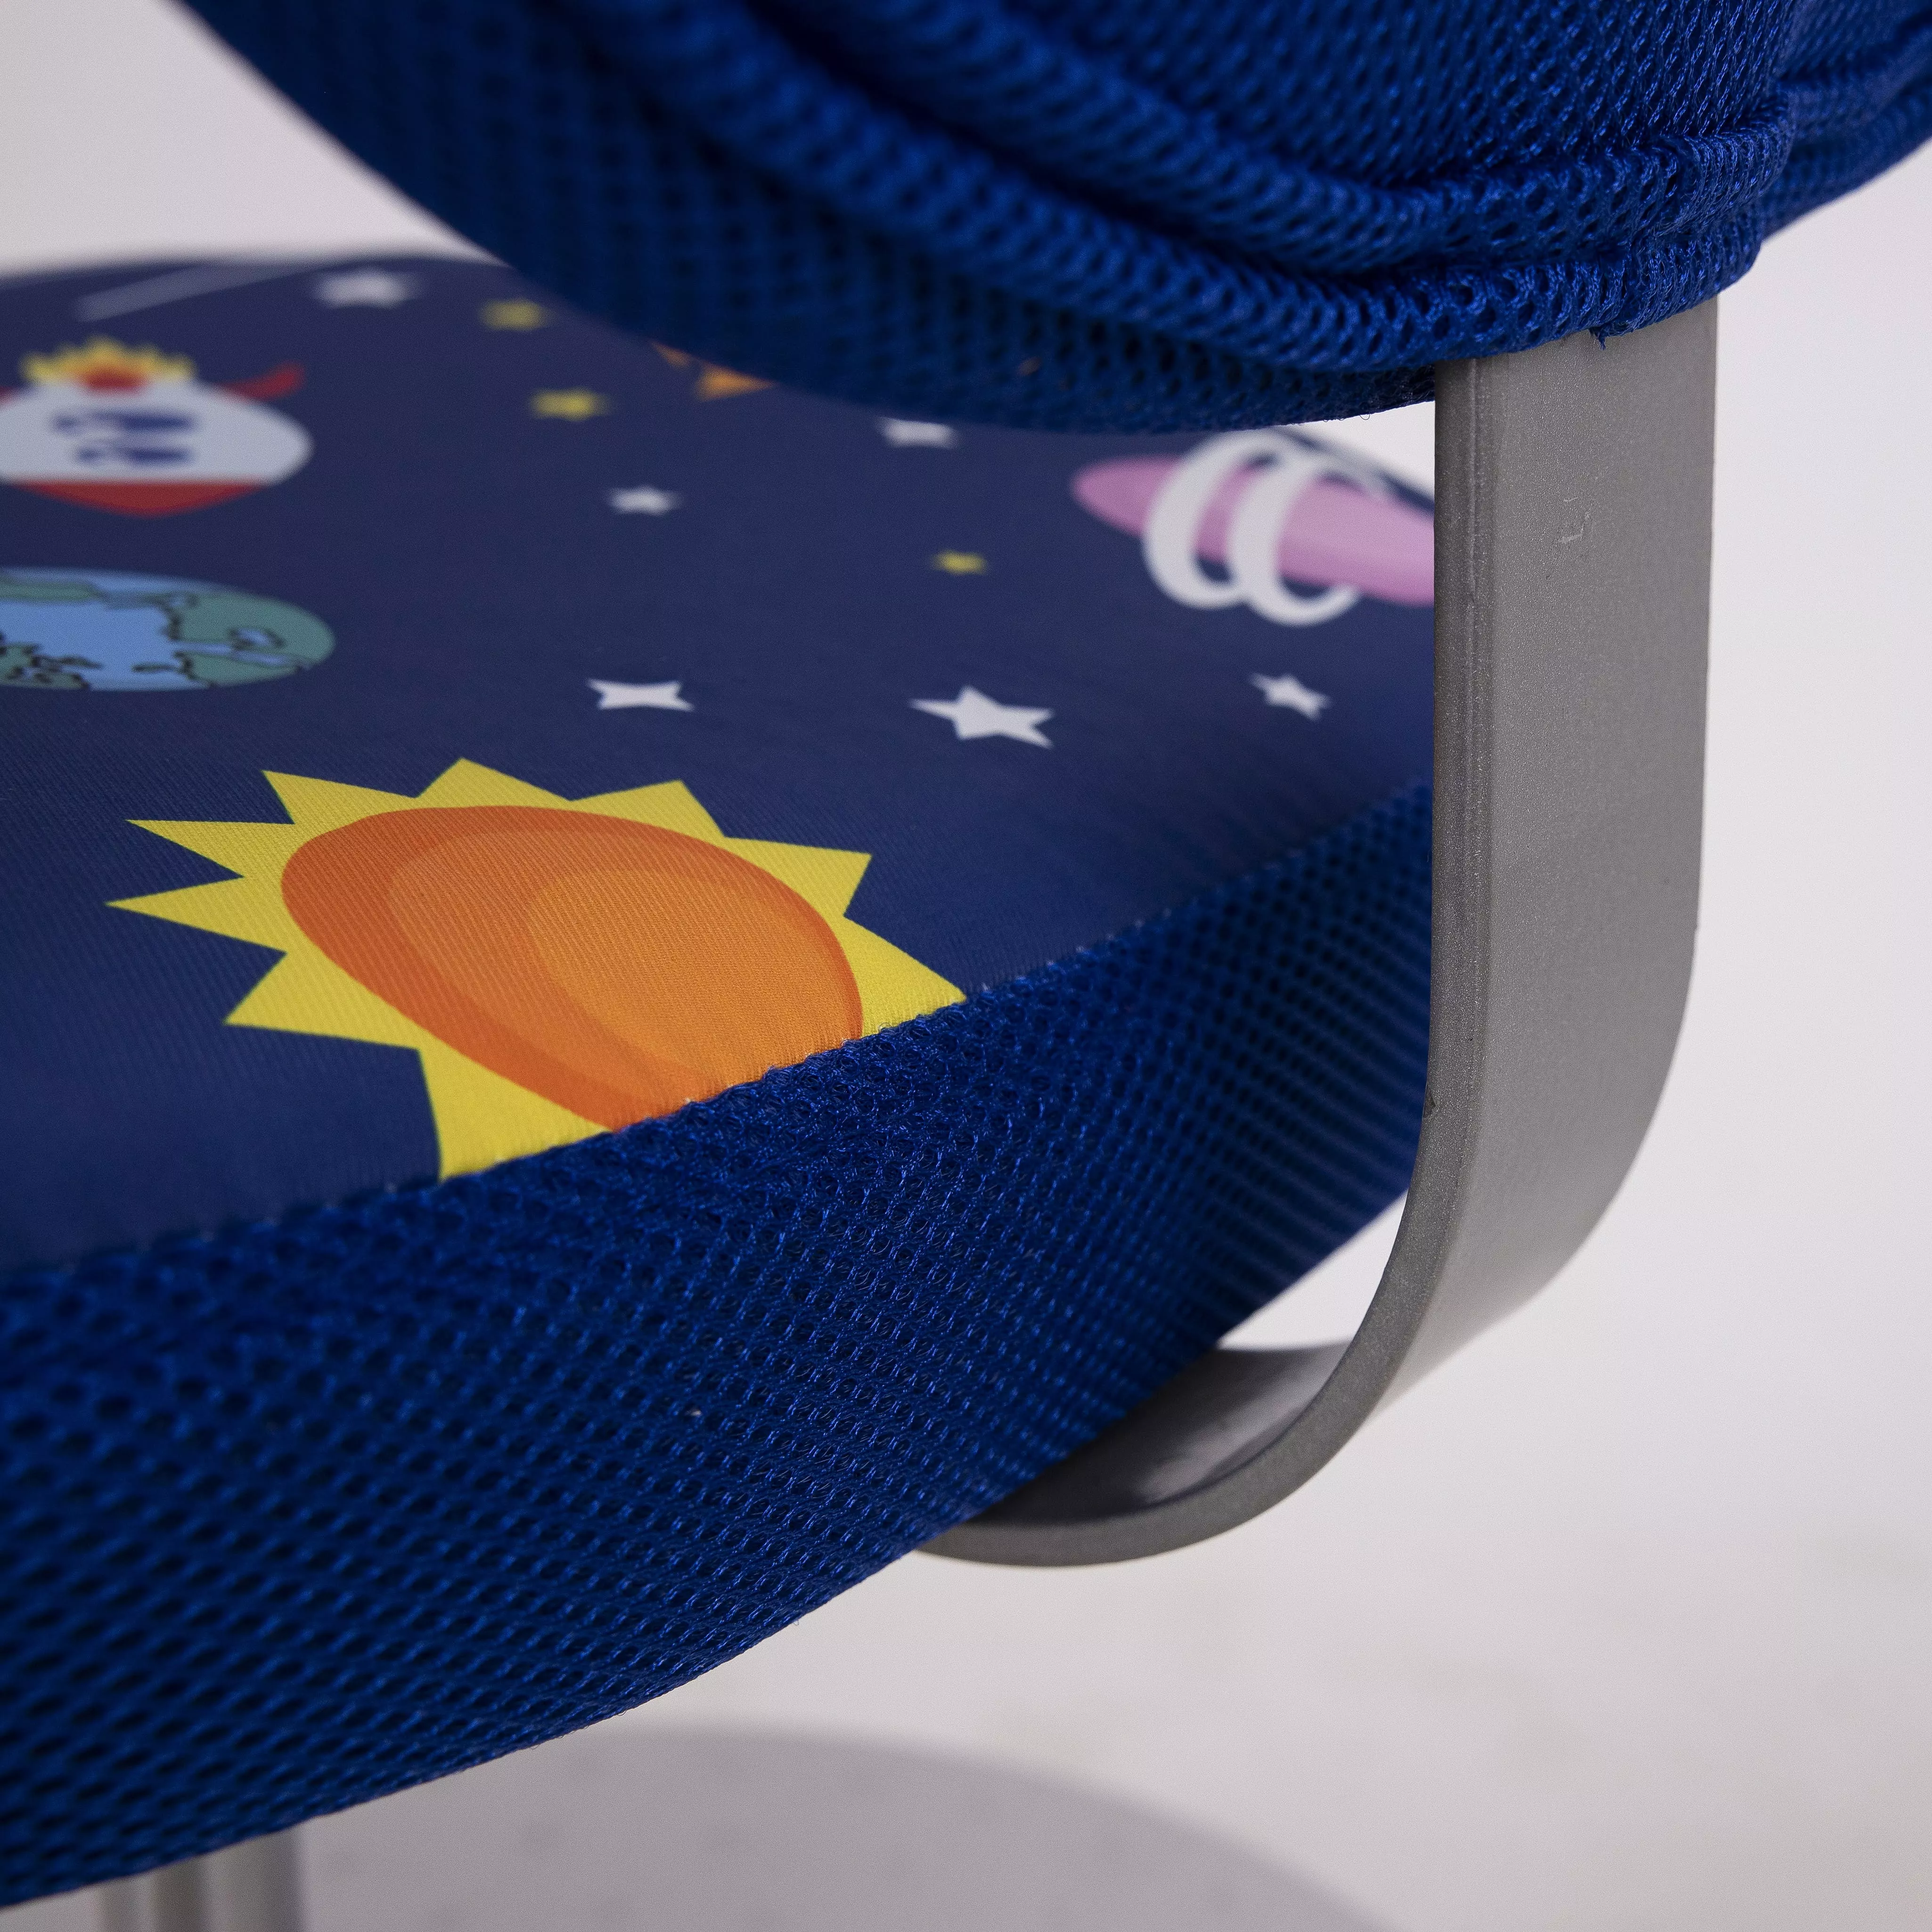 Кресло поворотное Catty синий космос 84762